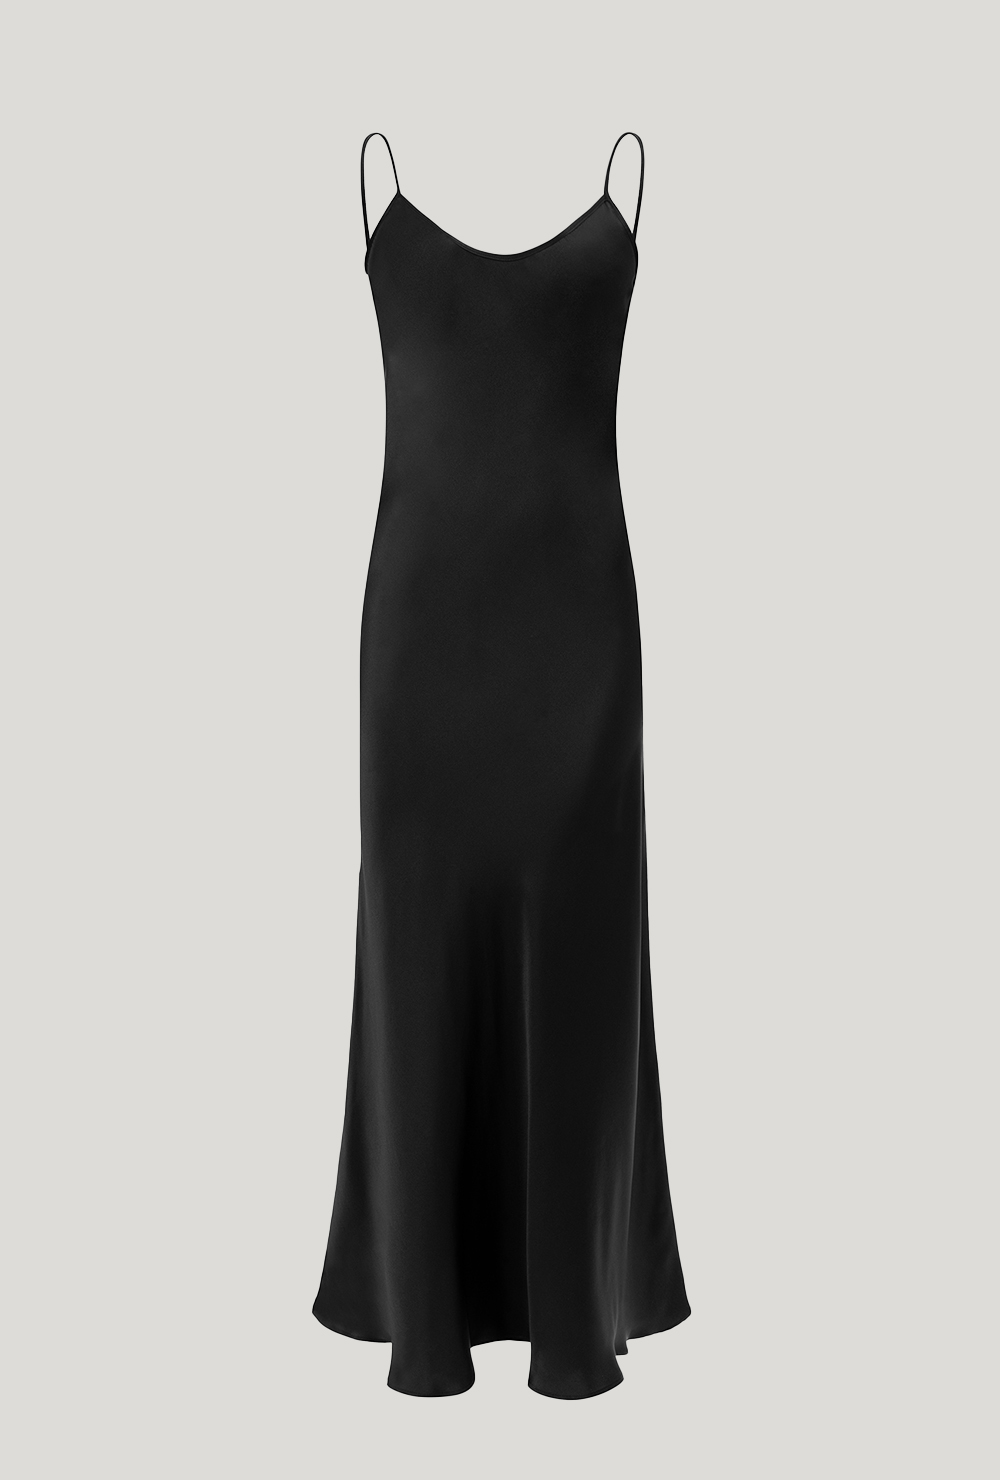 Silk maxi black dress with deep neckline on the back Czarna jedwabna sukienka maxi z głębokim dekoltem na plecach